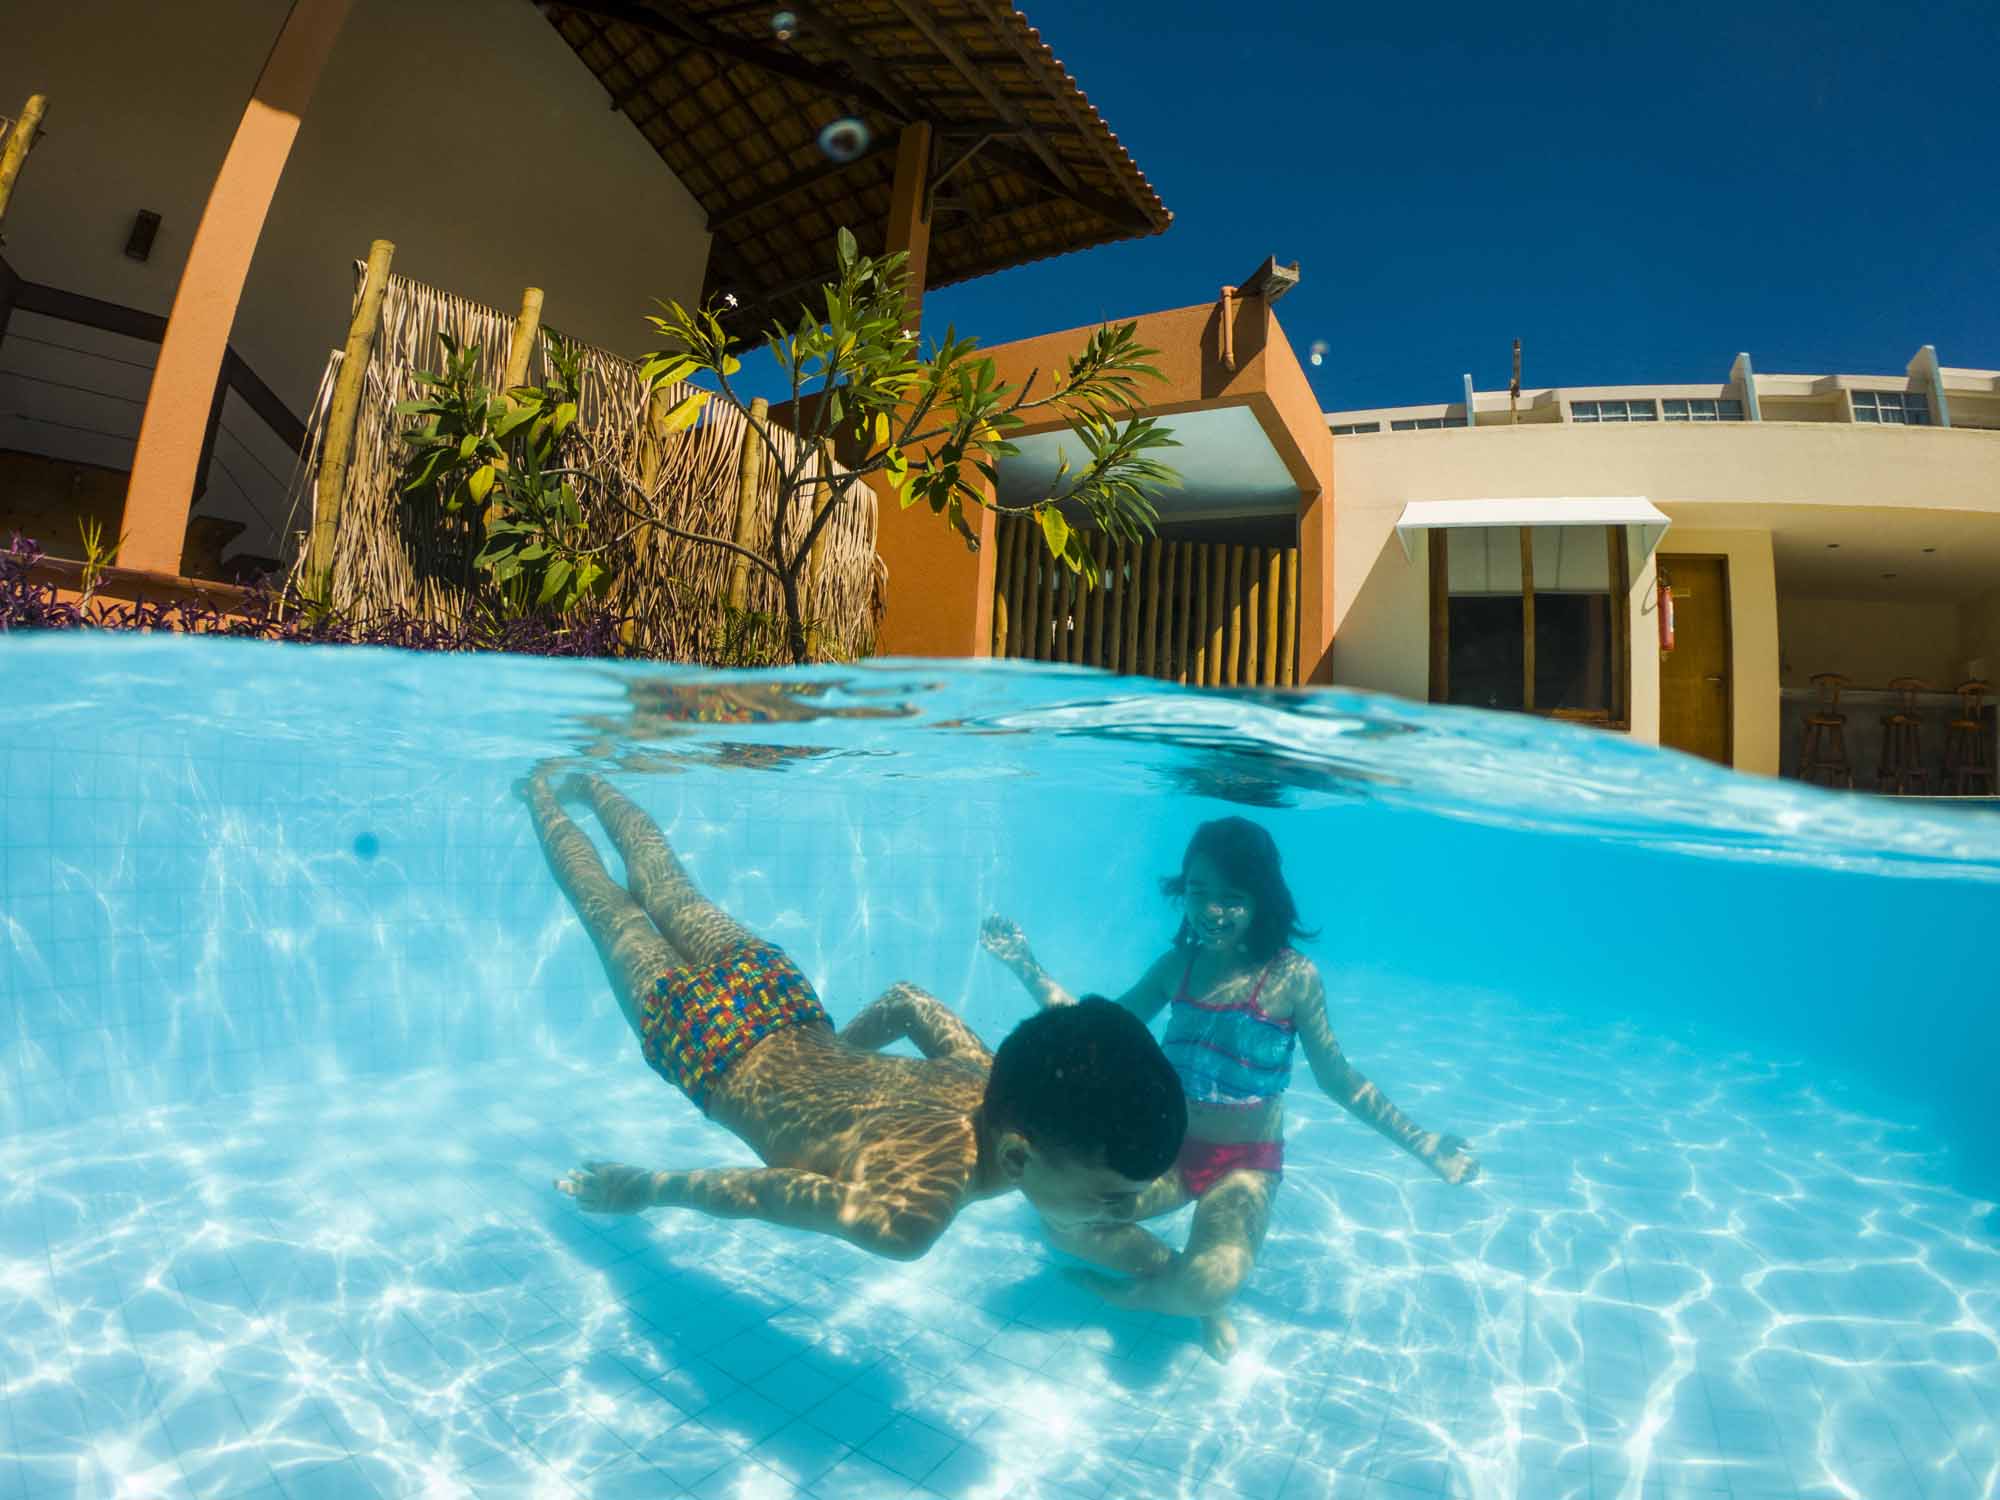 Vivá Barra Hotel pousada, Alagoas, Barra de São Miguel, lugar perfeito, hotéis em Alagoas, Fotos Márcio Dantas